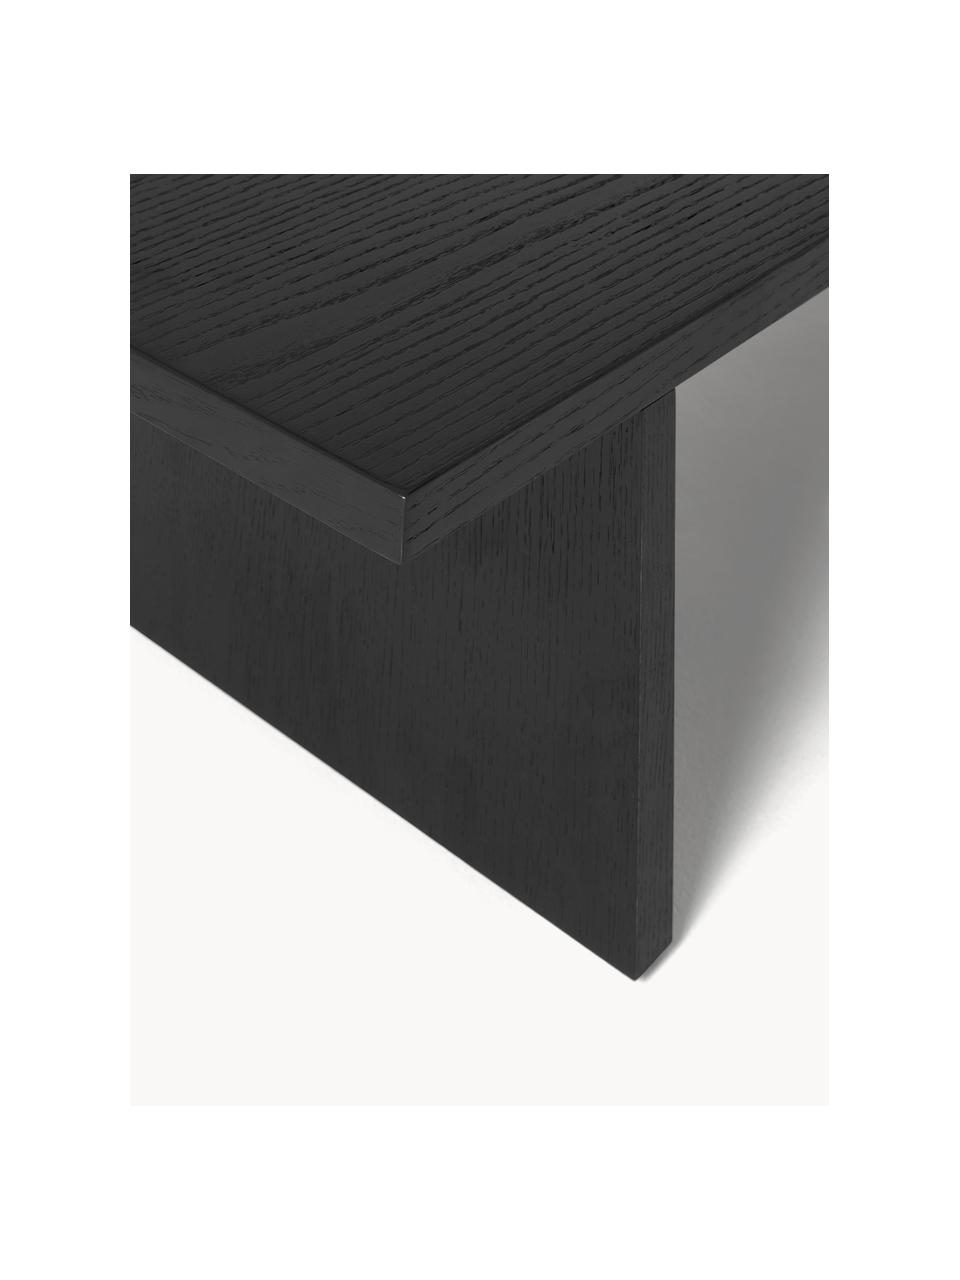 Nízký dřevěný konferenční stolek Toni, Lakovaná dřevovláknitá deska střední hustoty (MDF) s dubovou dýhou

Tento produkt je vyroben z udržitelných zdrojů dřeva s certifikací FSC®., Lakovaná černá dubová dýha, Š 120 cm, V 25 cm